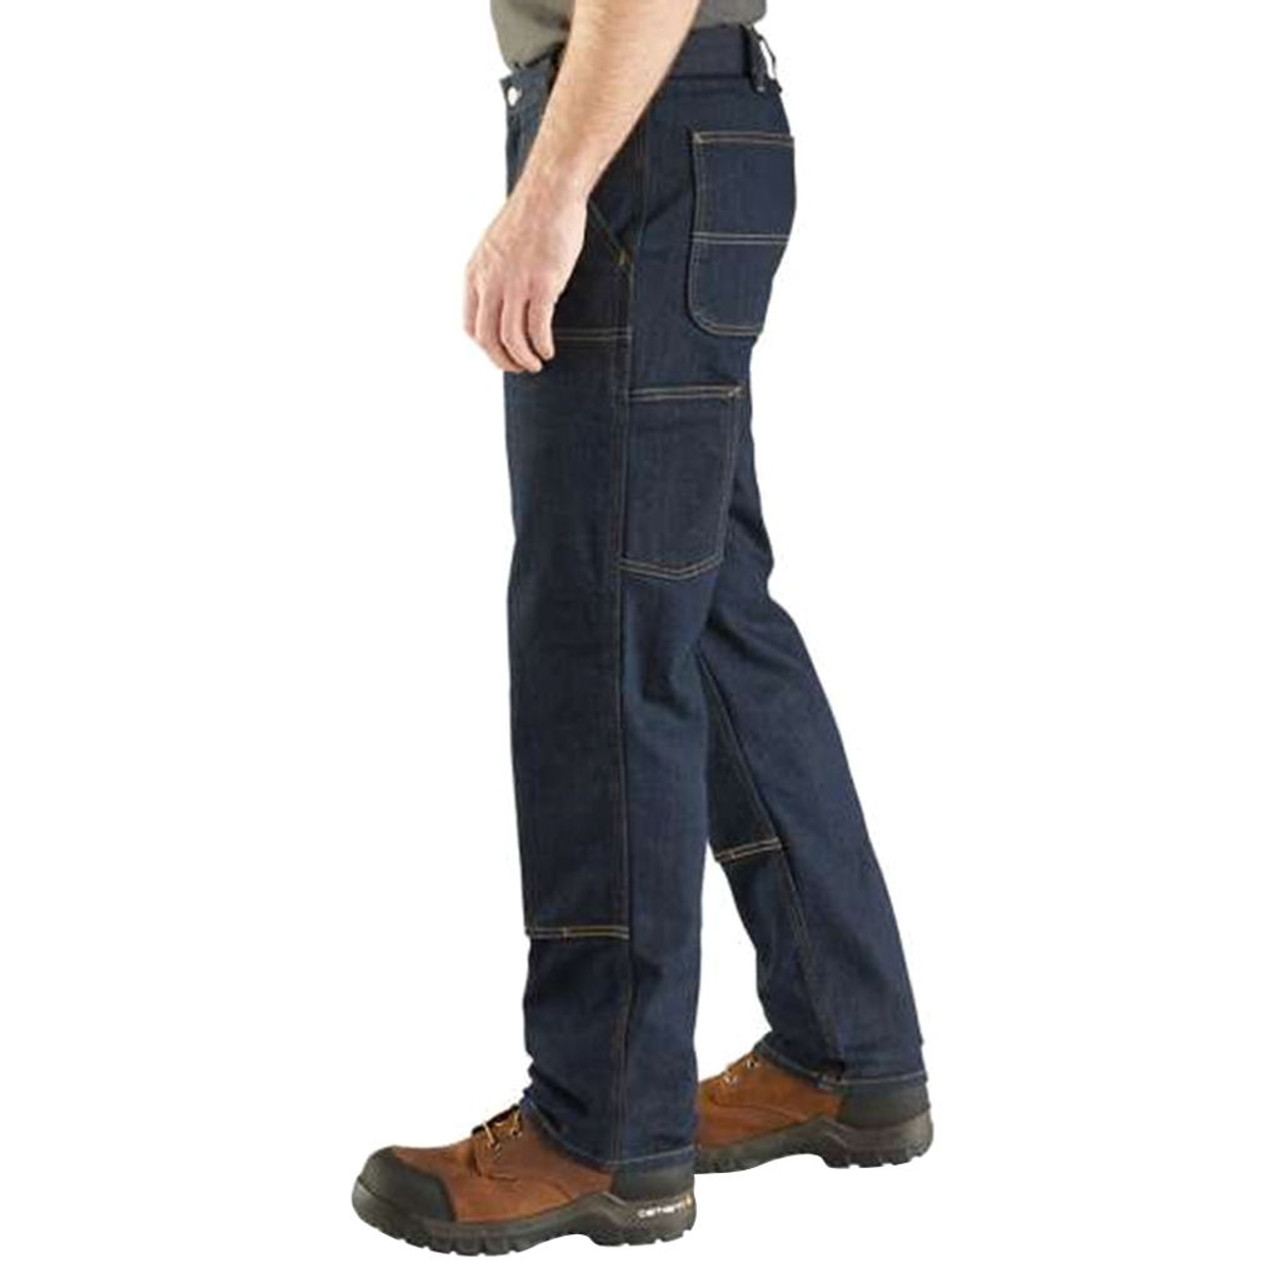 Carhartt 38x34 Rugged Flex 5-Pocket Jean